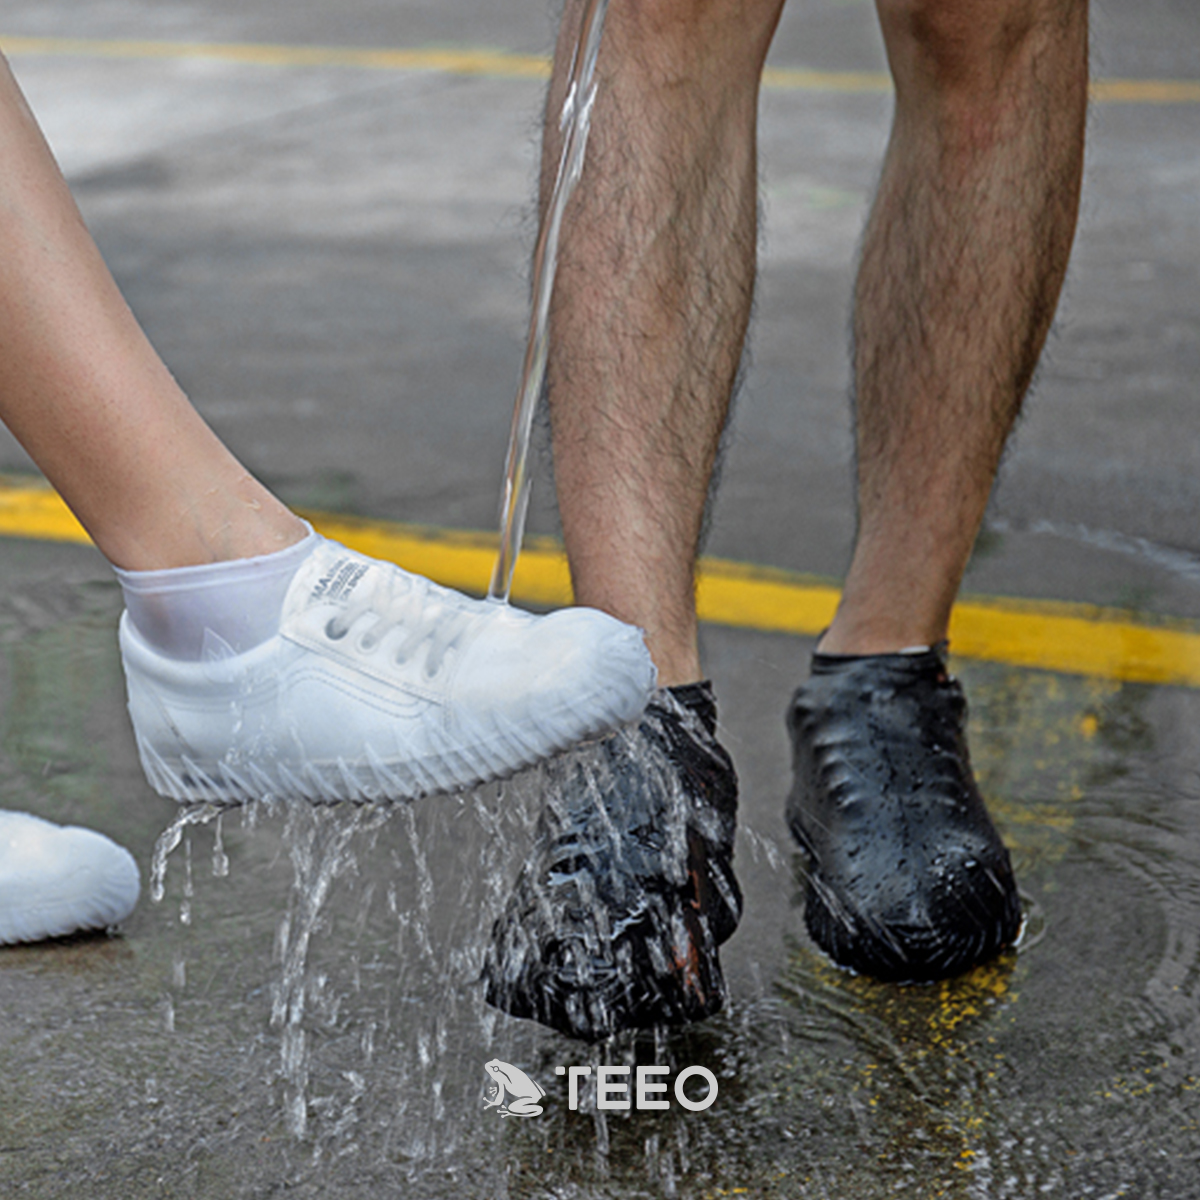 Plus Waterproof Travel Shoe Bag Women & Men Reusable Silicone Shoe Covers Waterproof Foldable Slip Cycling Outdoor Shoe Covers for Kids Ultra-Tech Rain Shoe Covers 